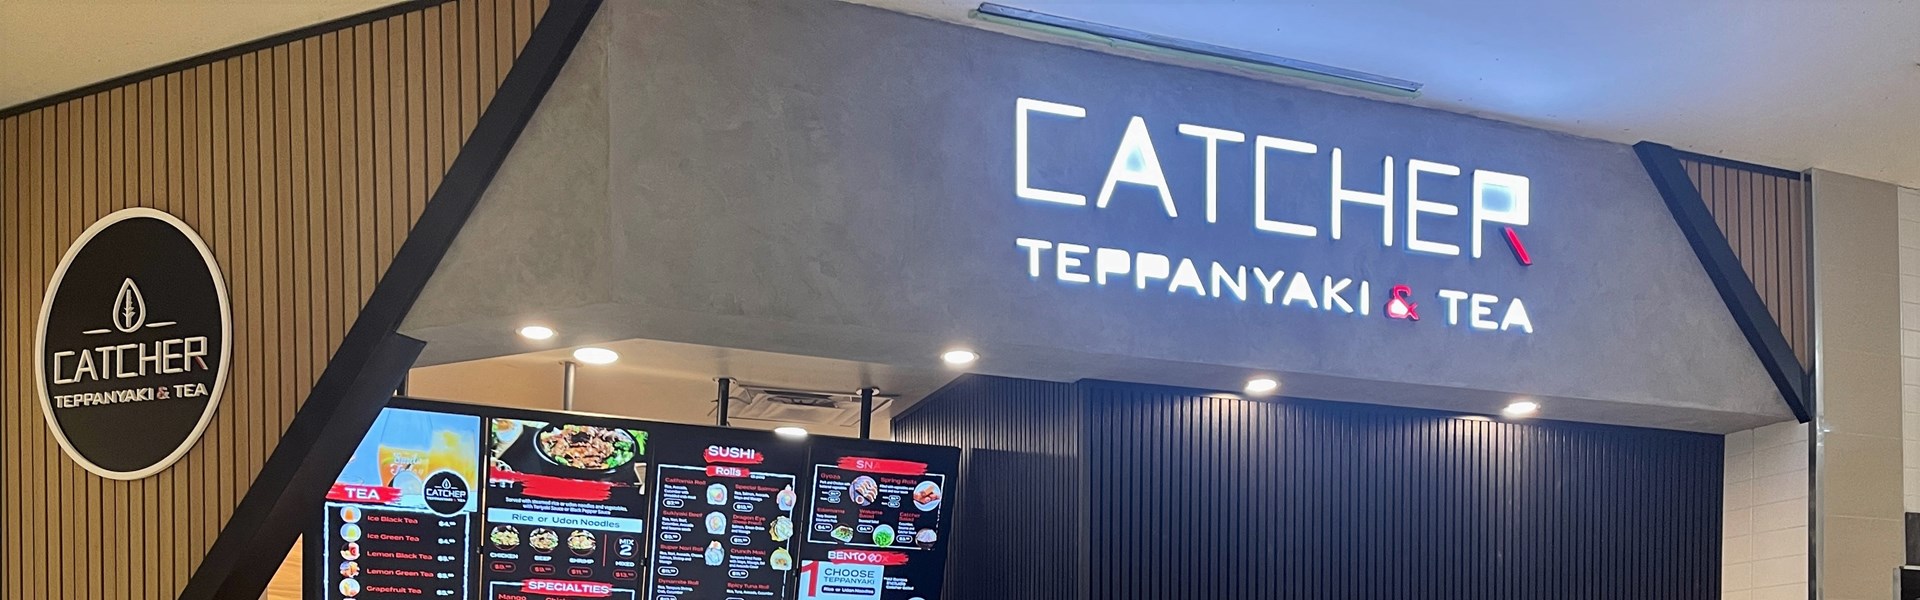 Catcher Teppanyaki & Tea